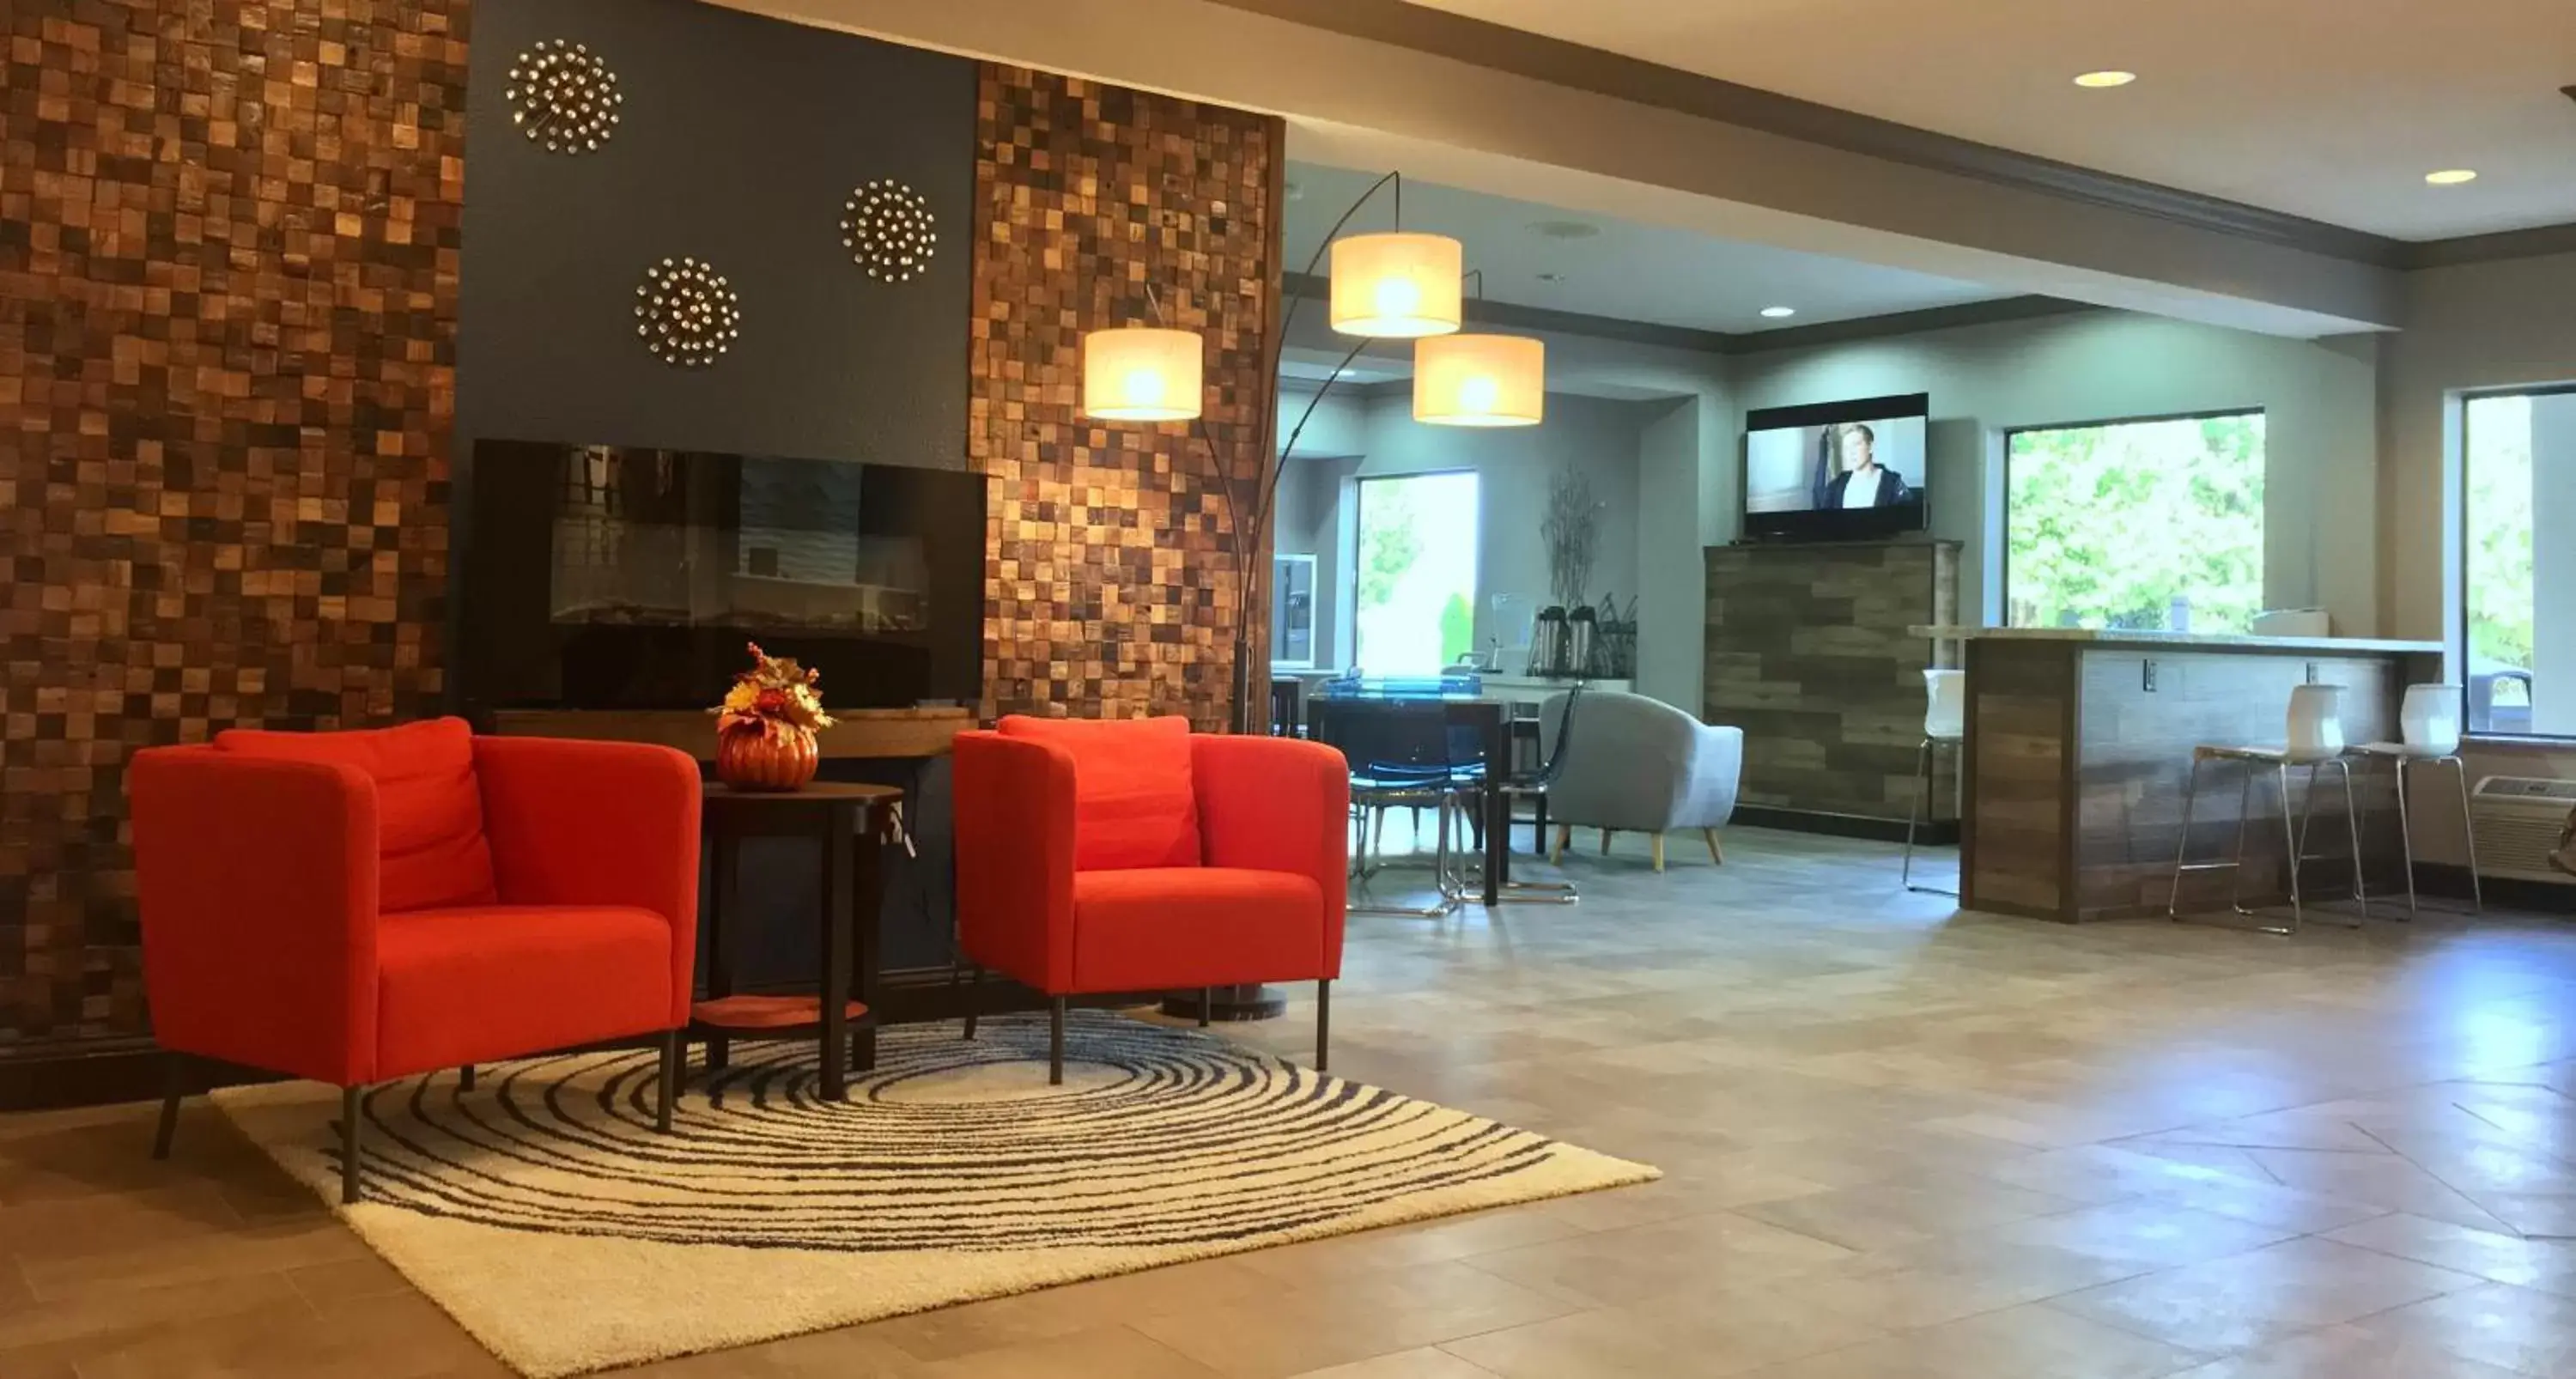 Lobby or reception, Lobby/Reception in Baymont by Wyndham O'Fallon St. Louis Area